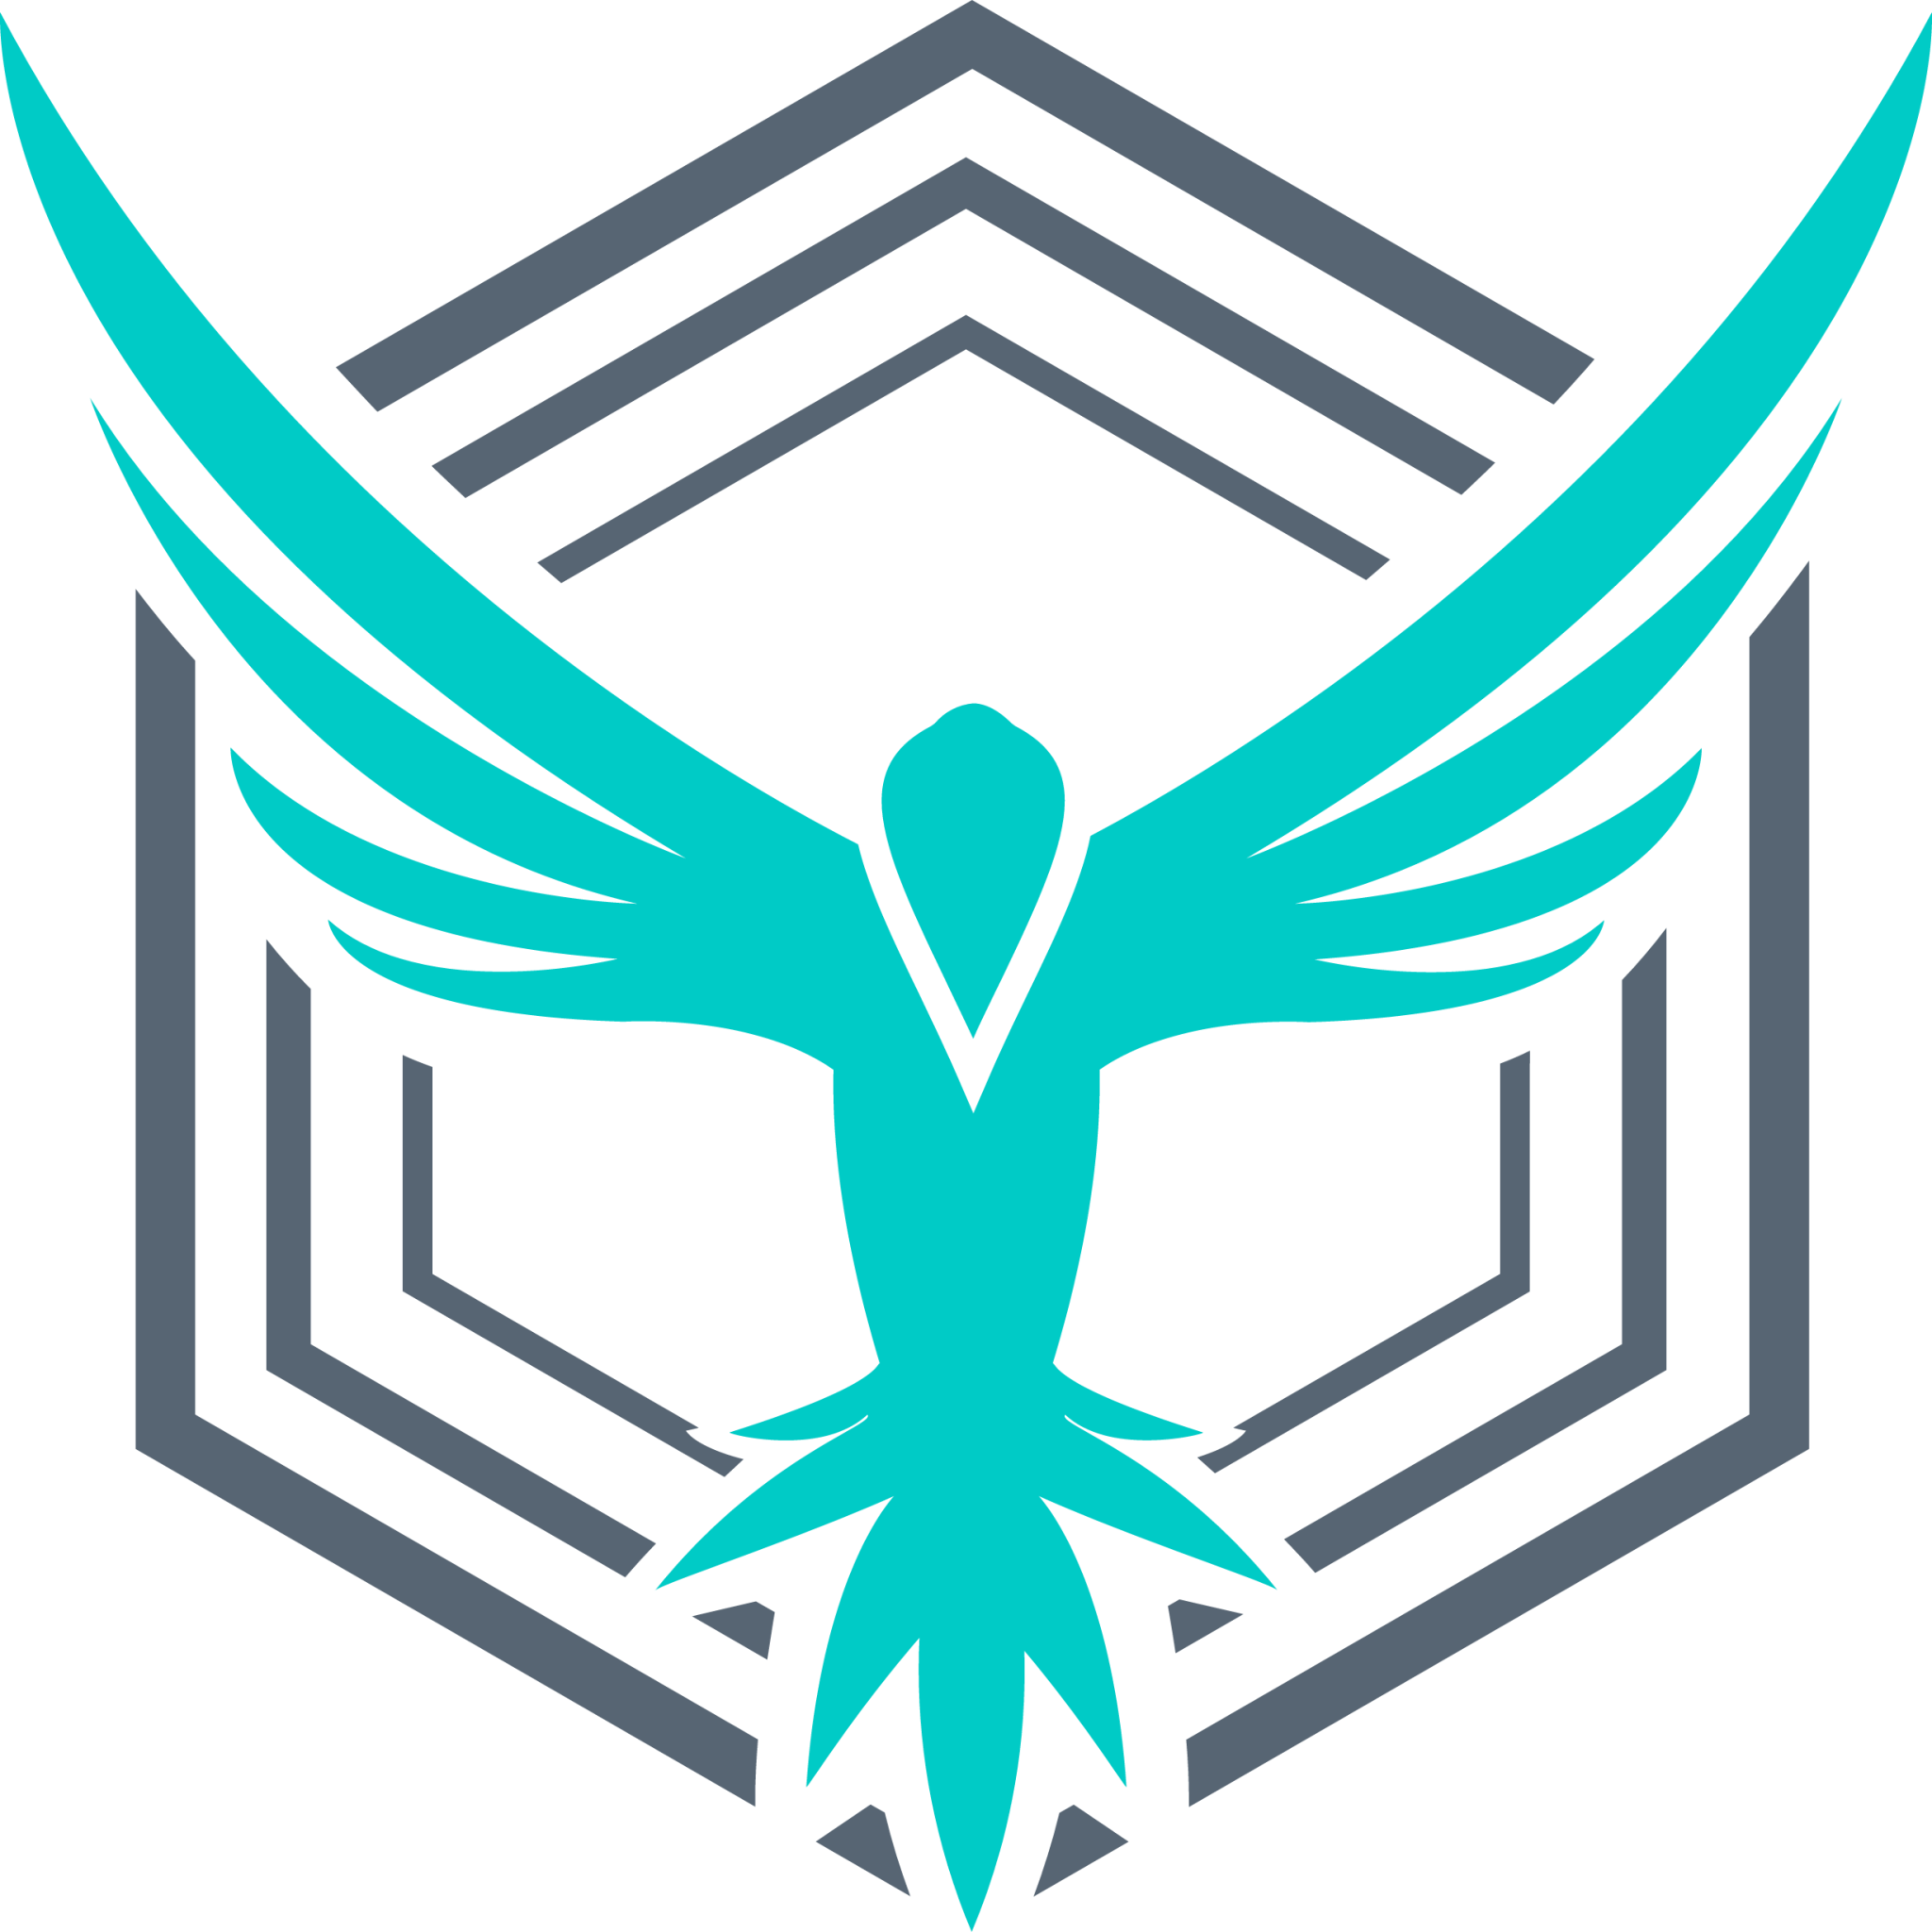 stackhawk icon